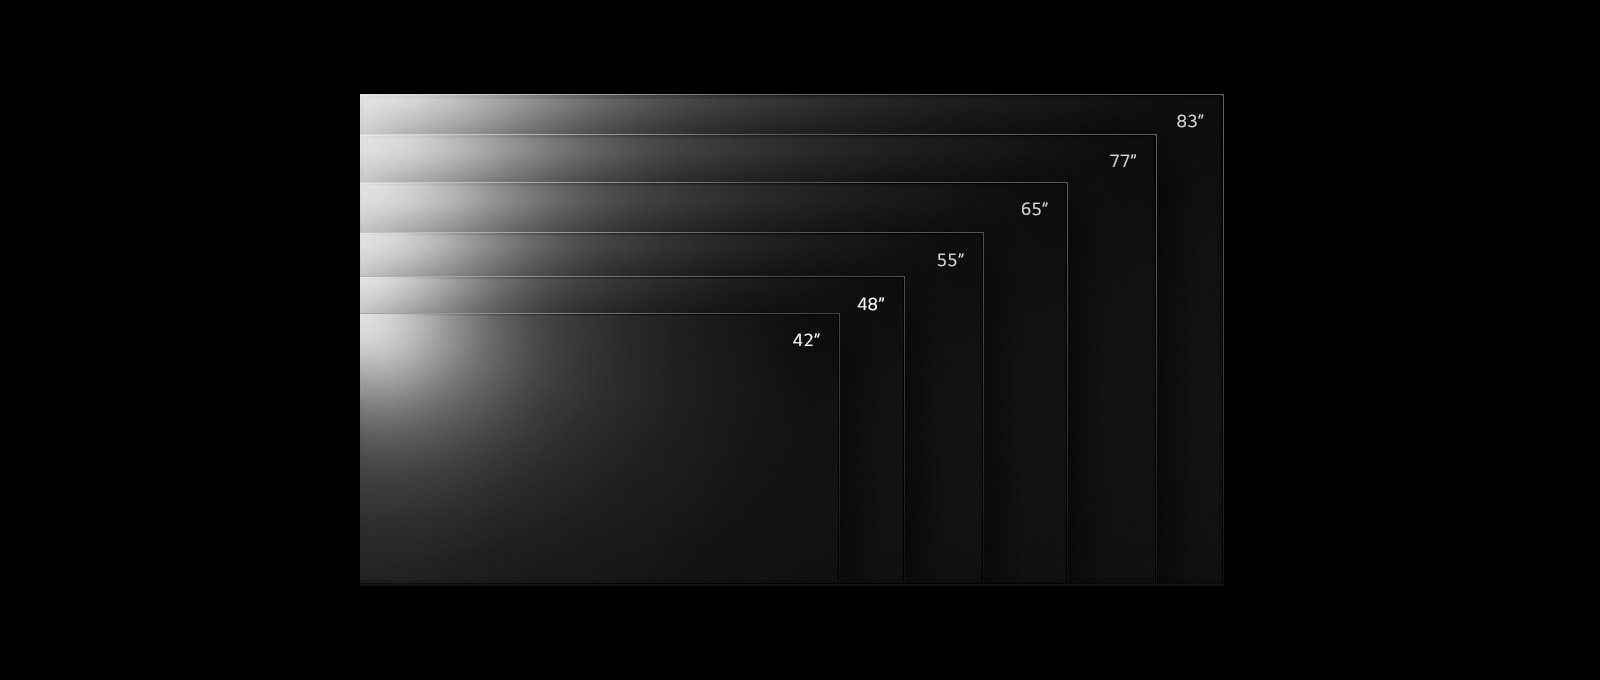 Rad televízorov LG OLED C2 v rôznych veľkostiach od 42 do 83 palcov